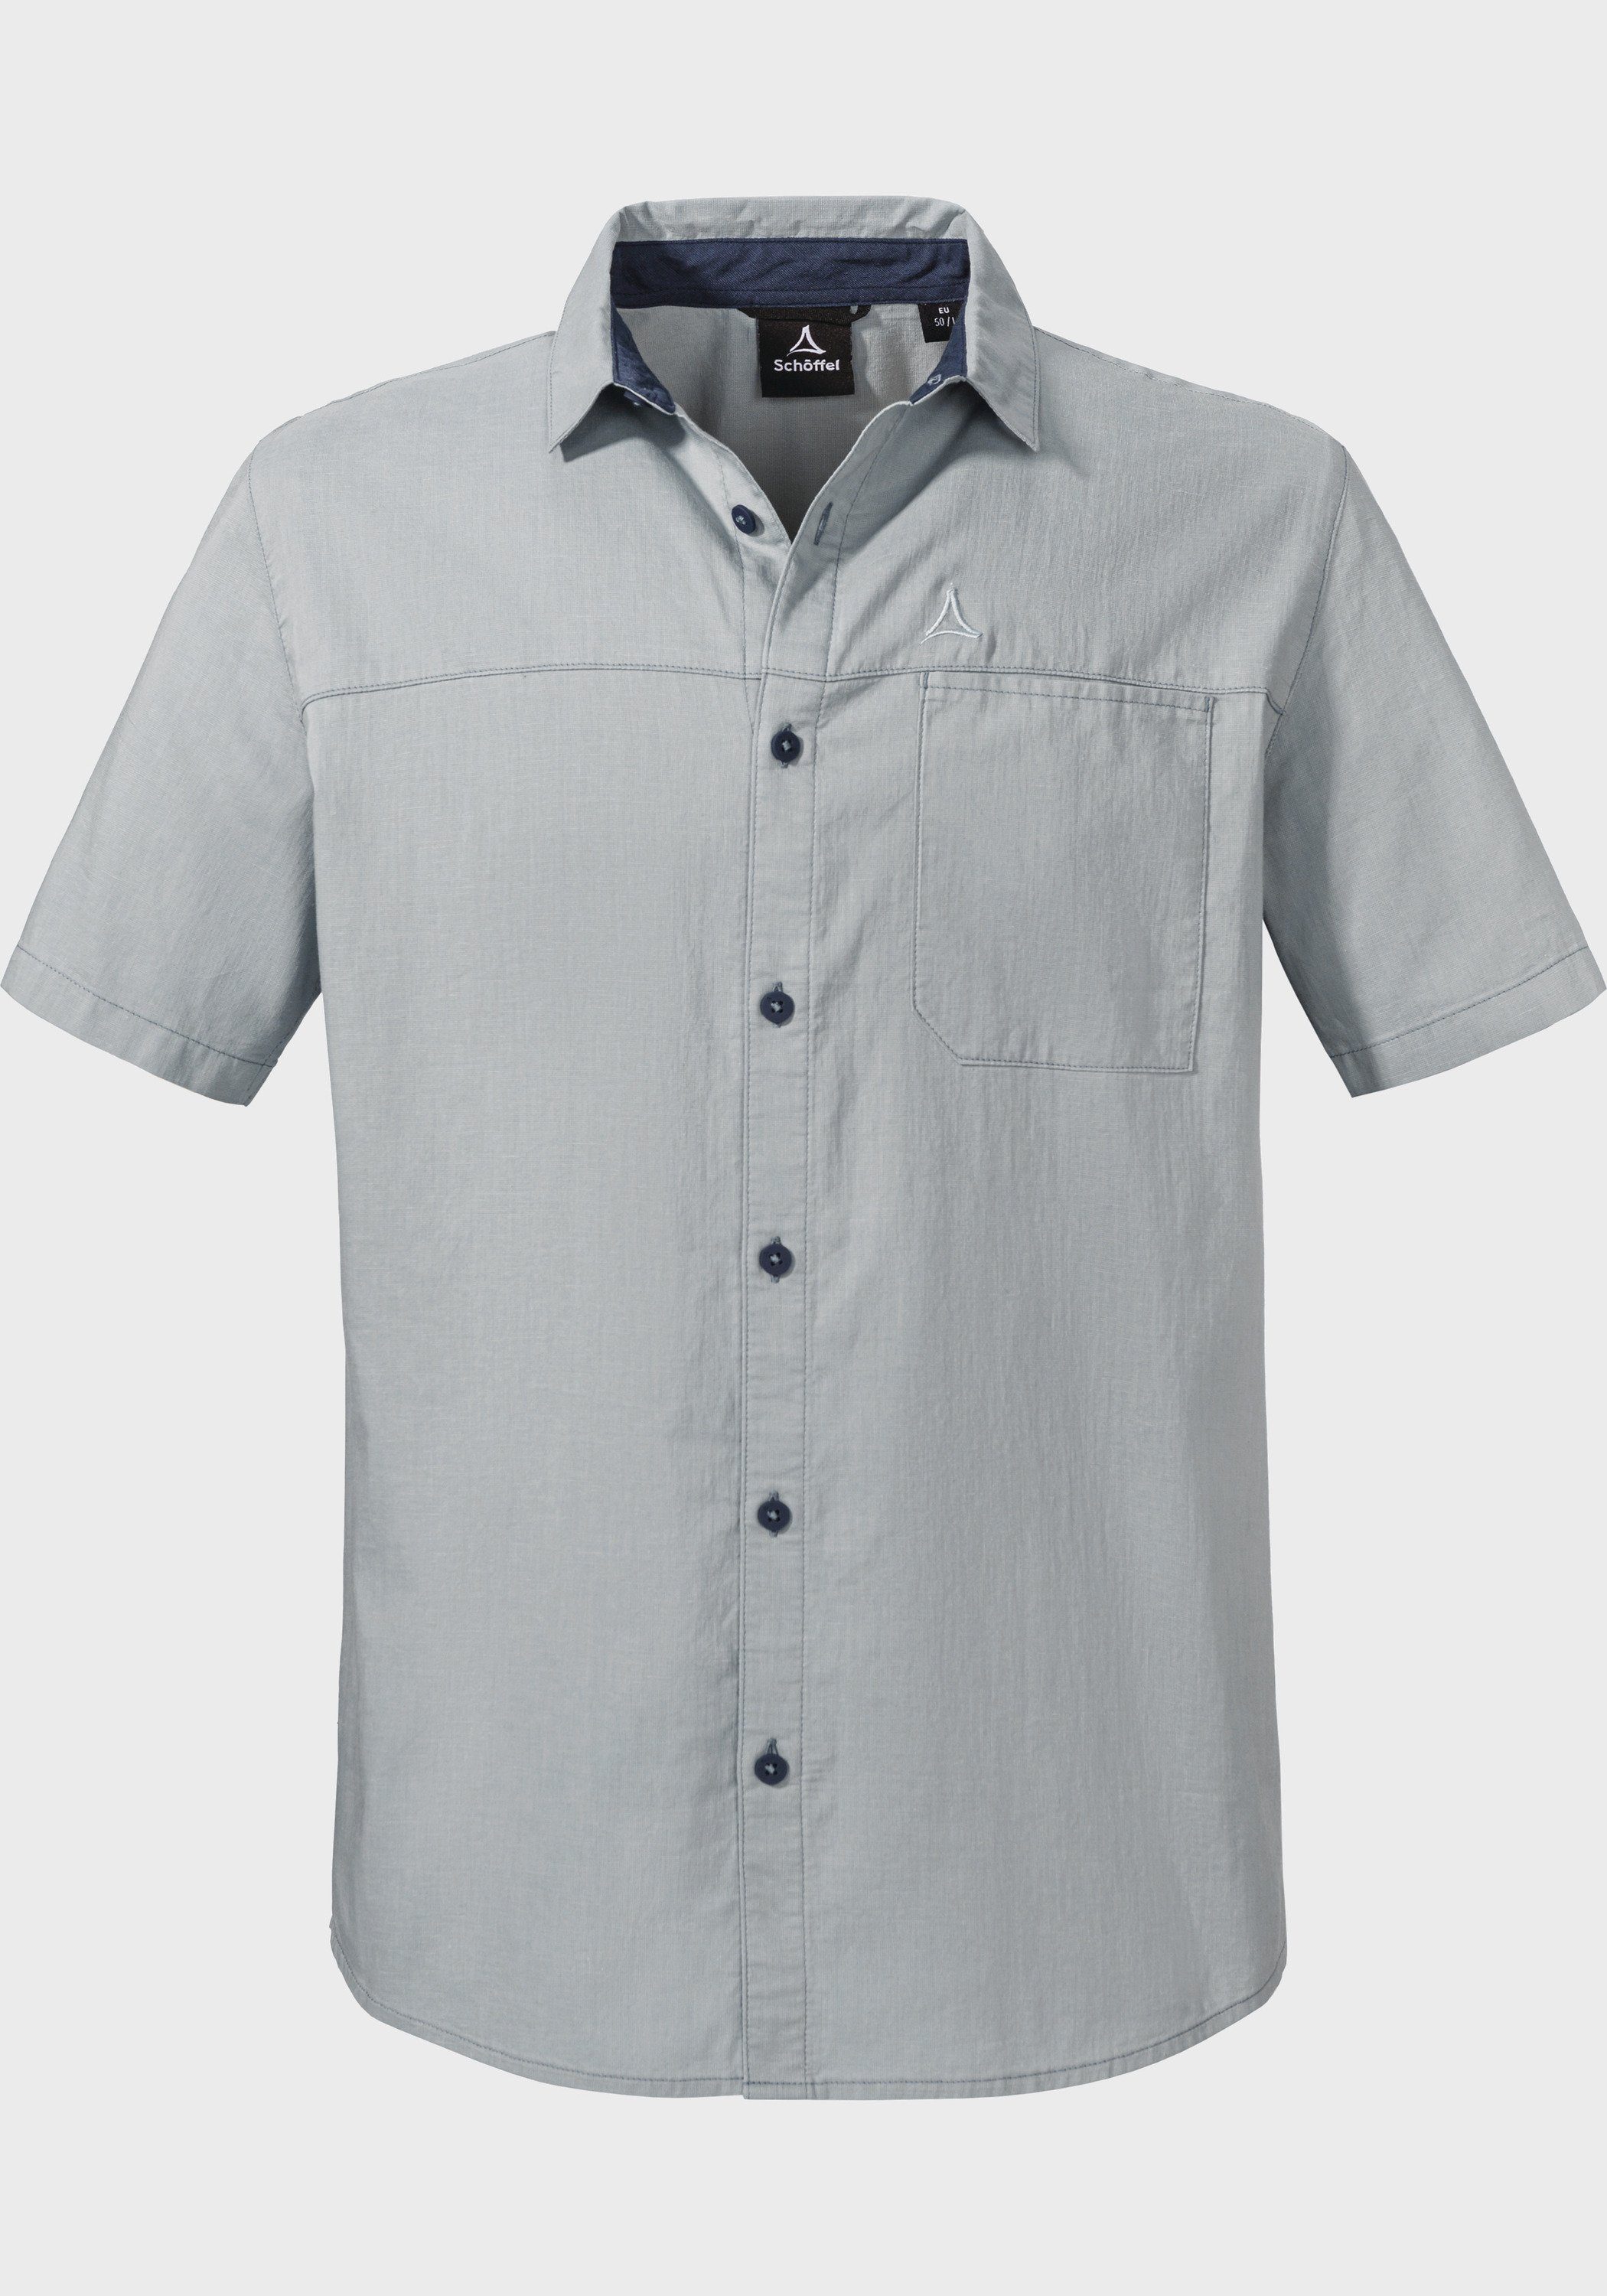 Outdoorhemd von Anbau biologischem Baumwolle Shirt Schöffel Triest M, Einsatz aus